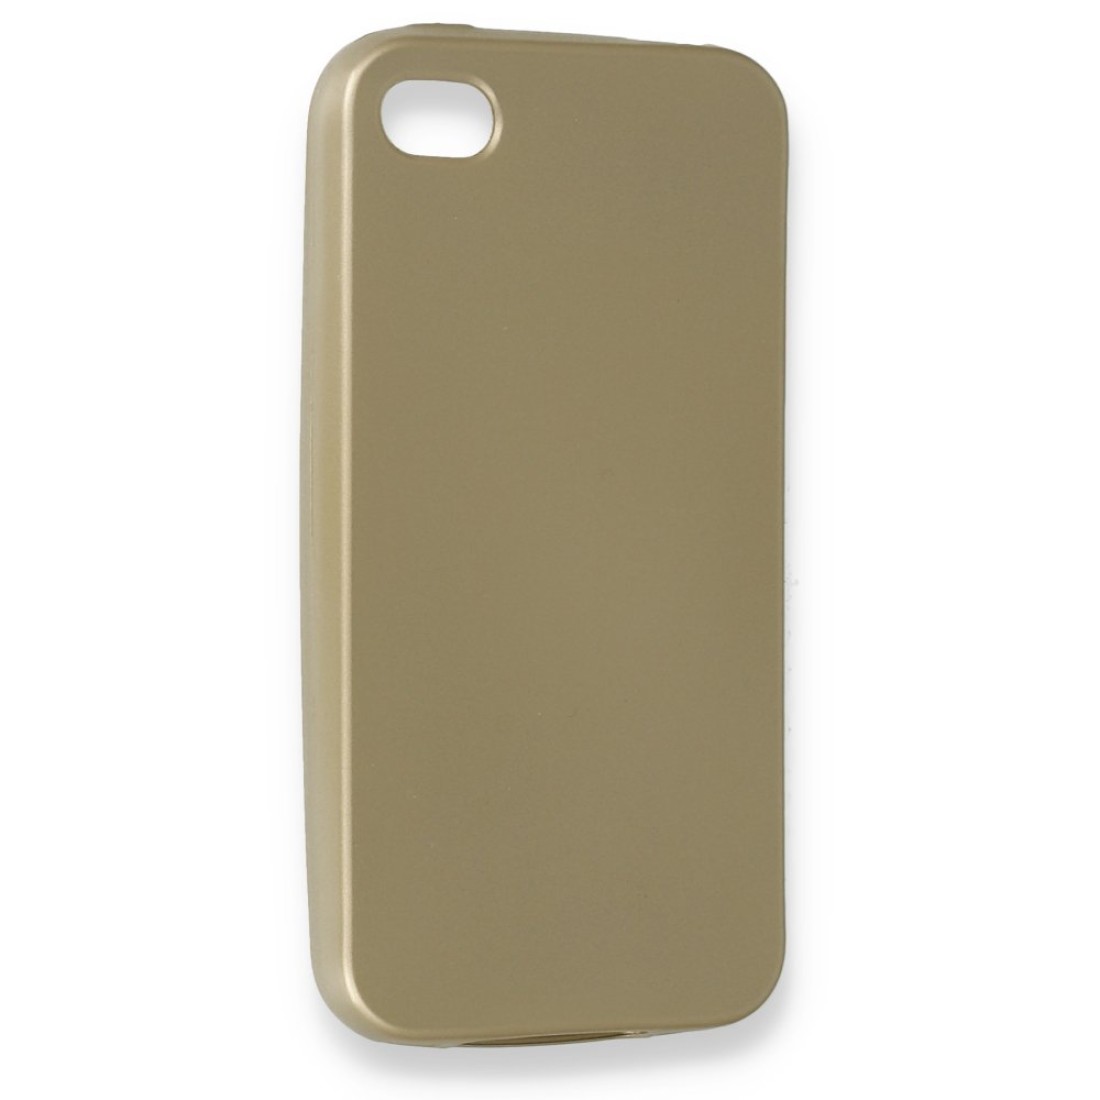 Apple iPhone 4 Kılıf Premium Rubber Silikon - Gold